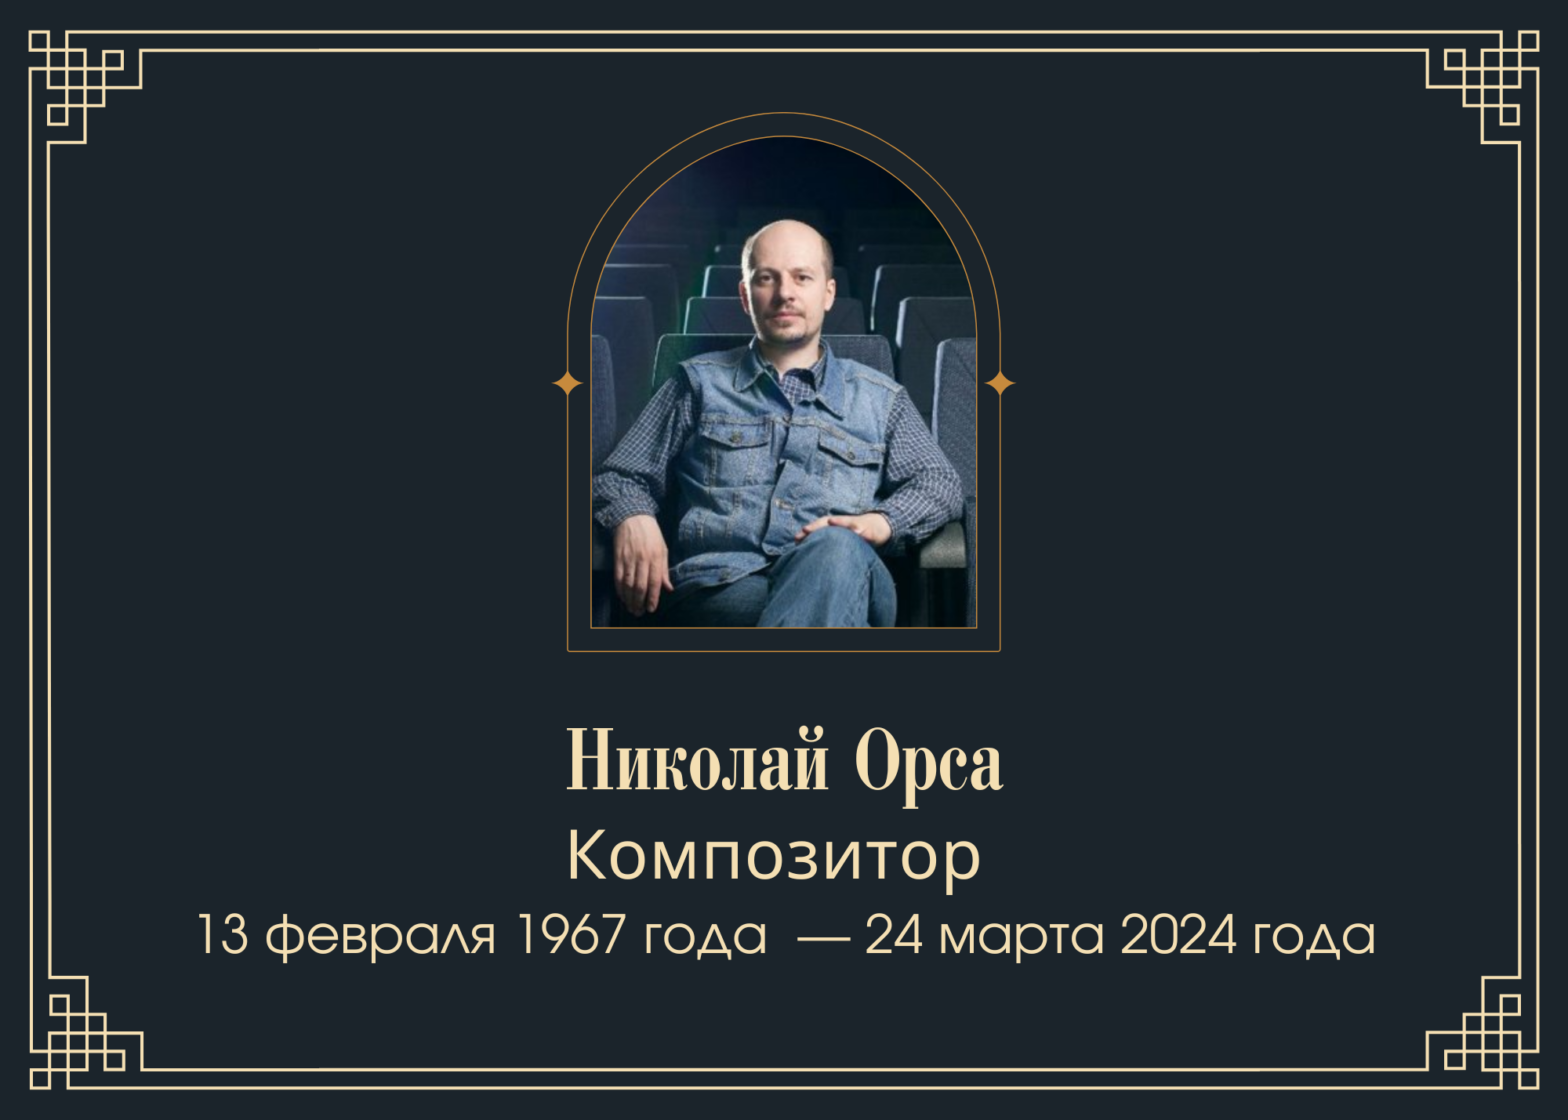 Умер композитор Николай Орса